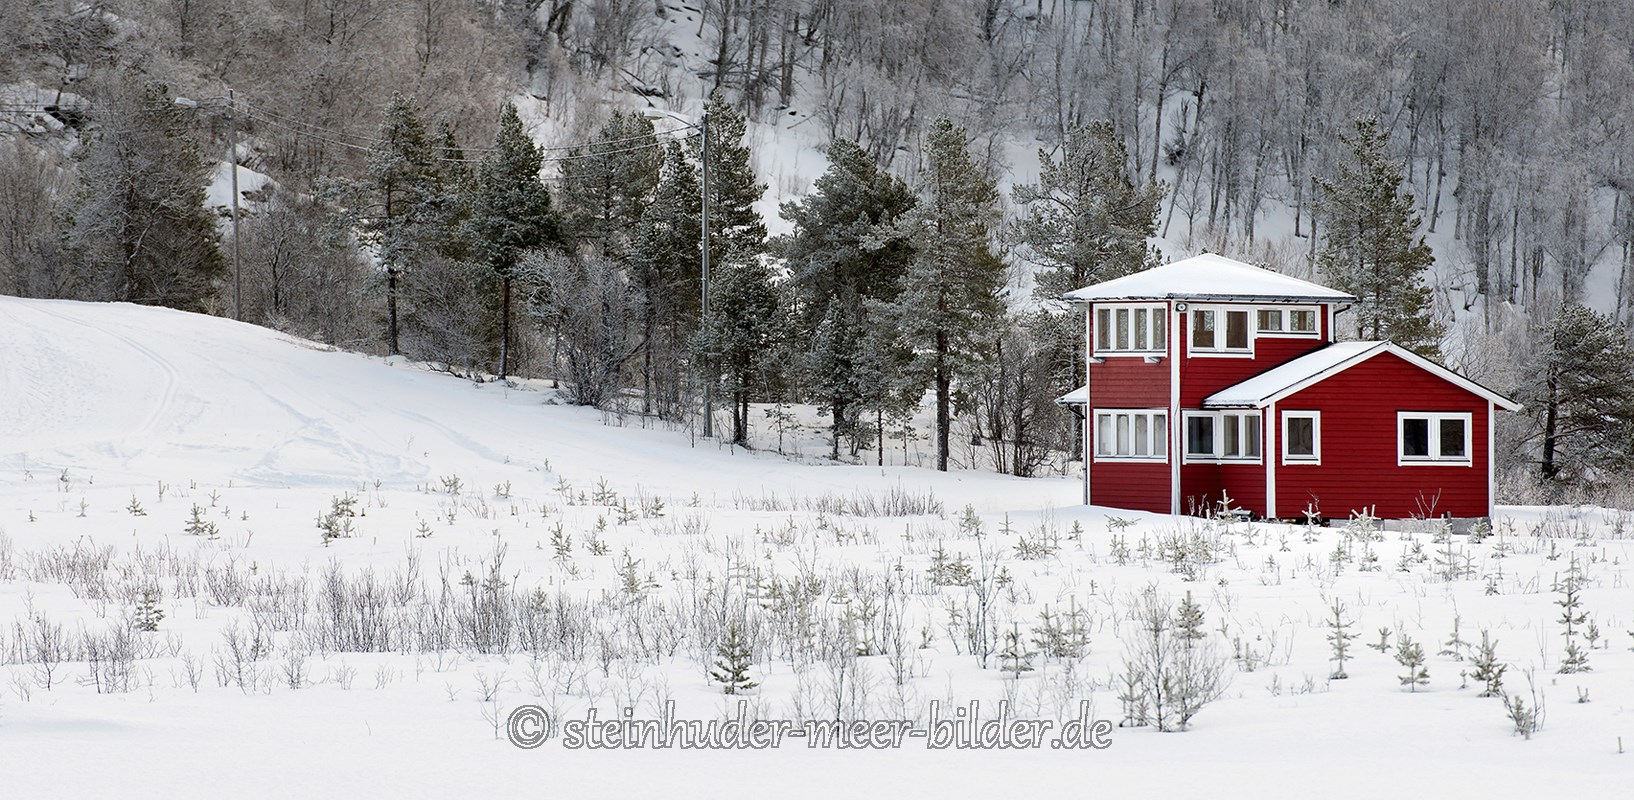 panorama-winter-schnee-verschneit-landschaft-rot-haus-landhaus-wald-Norwegen-A_DSC5165a